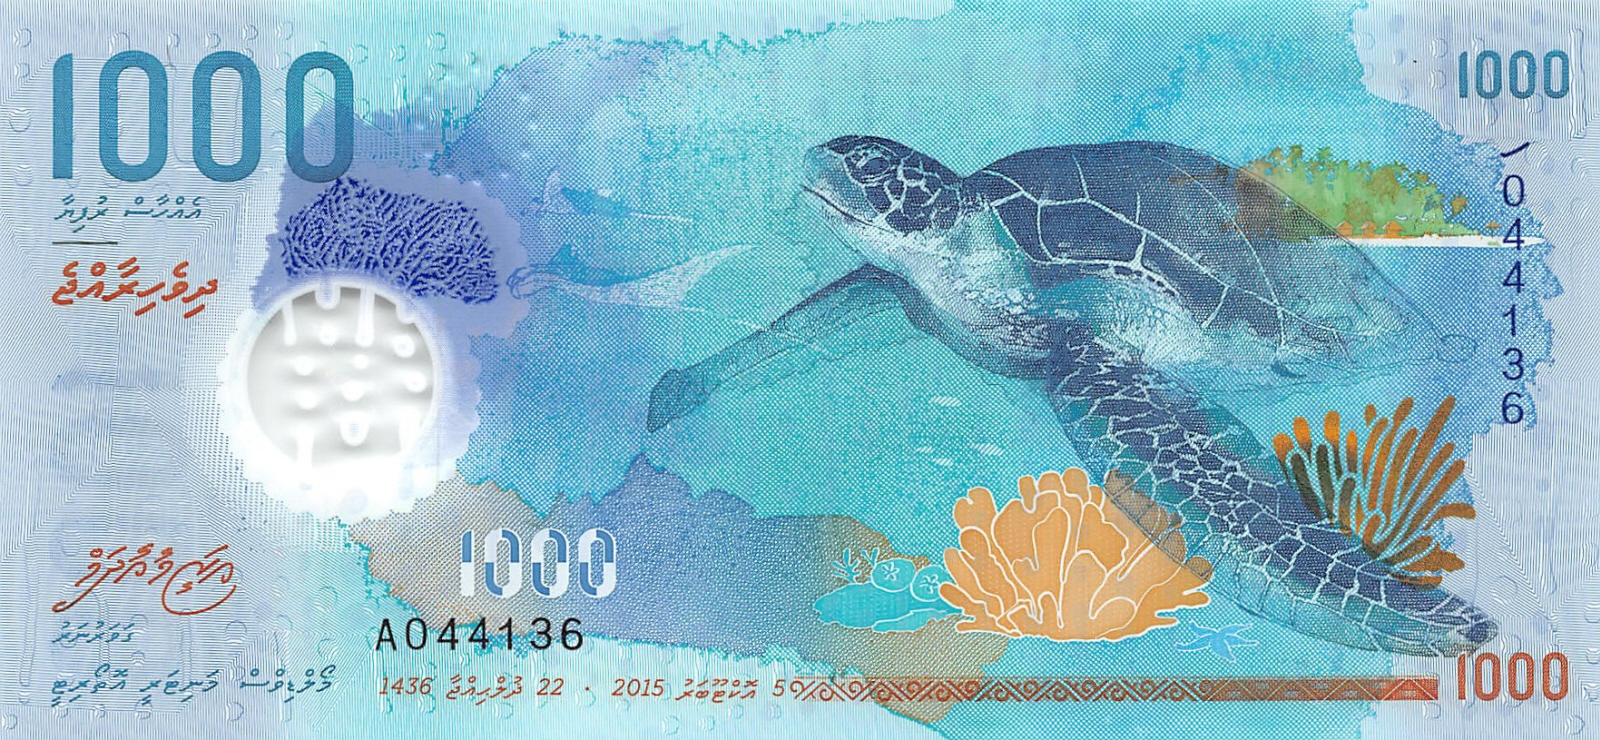 Maldives 1000 Rufiyaa 2015 Unc Polymer Note